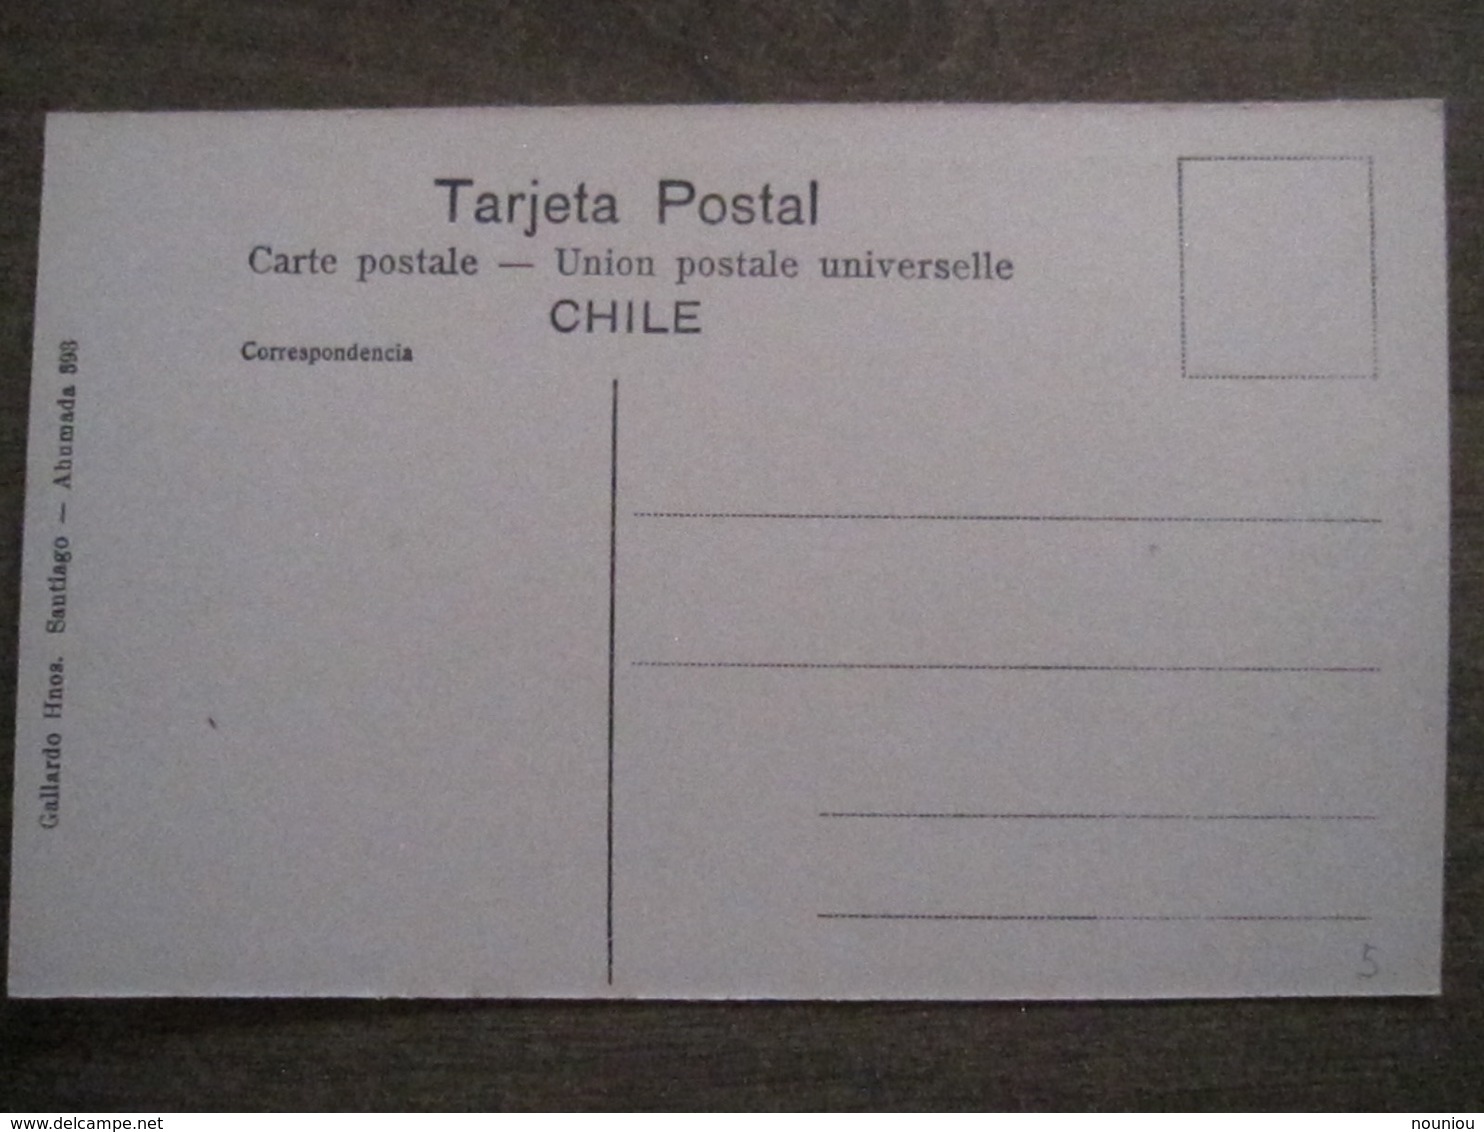 Tarjeta Postal - Chile Chili - Santiago - Parque Cousino El Cerrito - Hnos Ahumada 393 No. 102 - Foto Leon - Chile